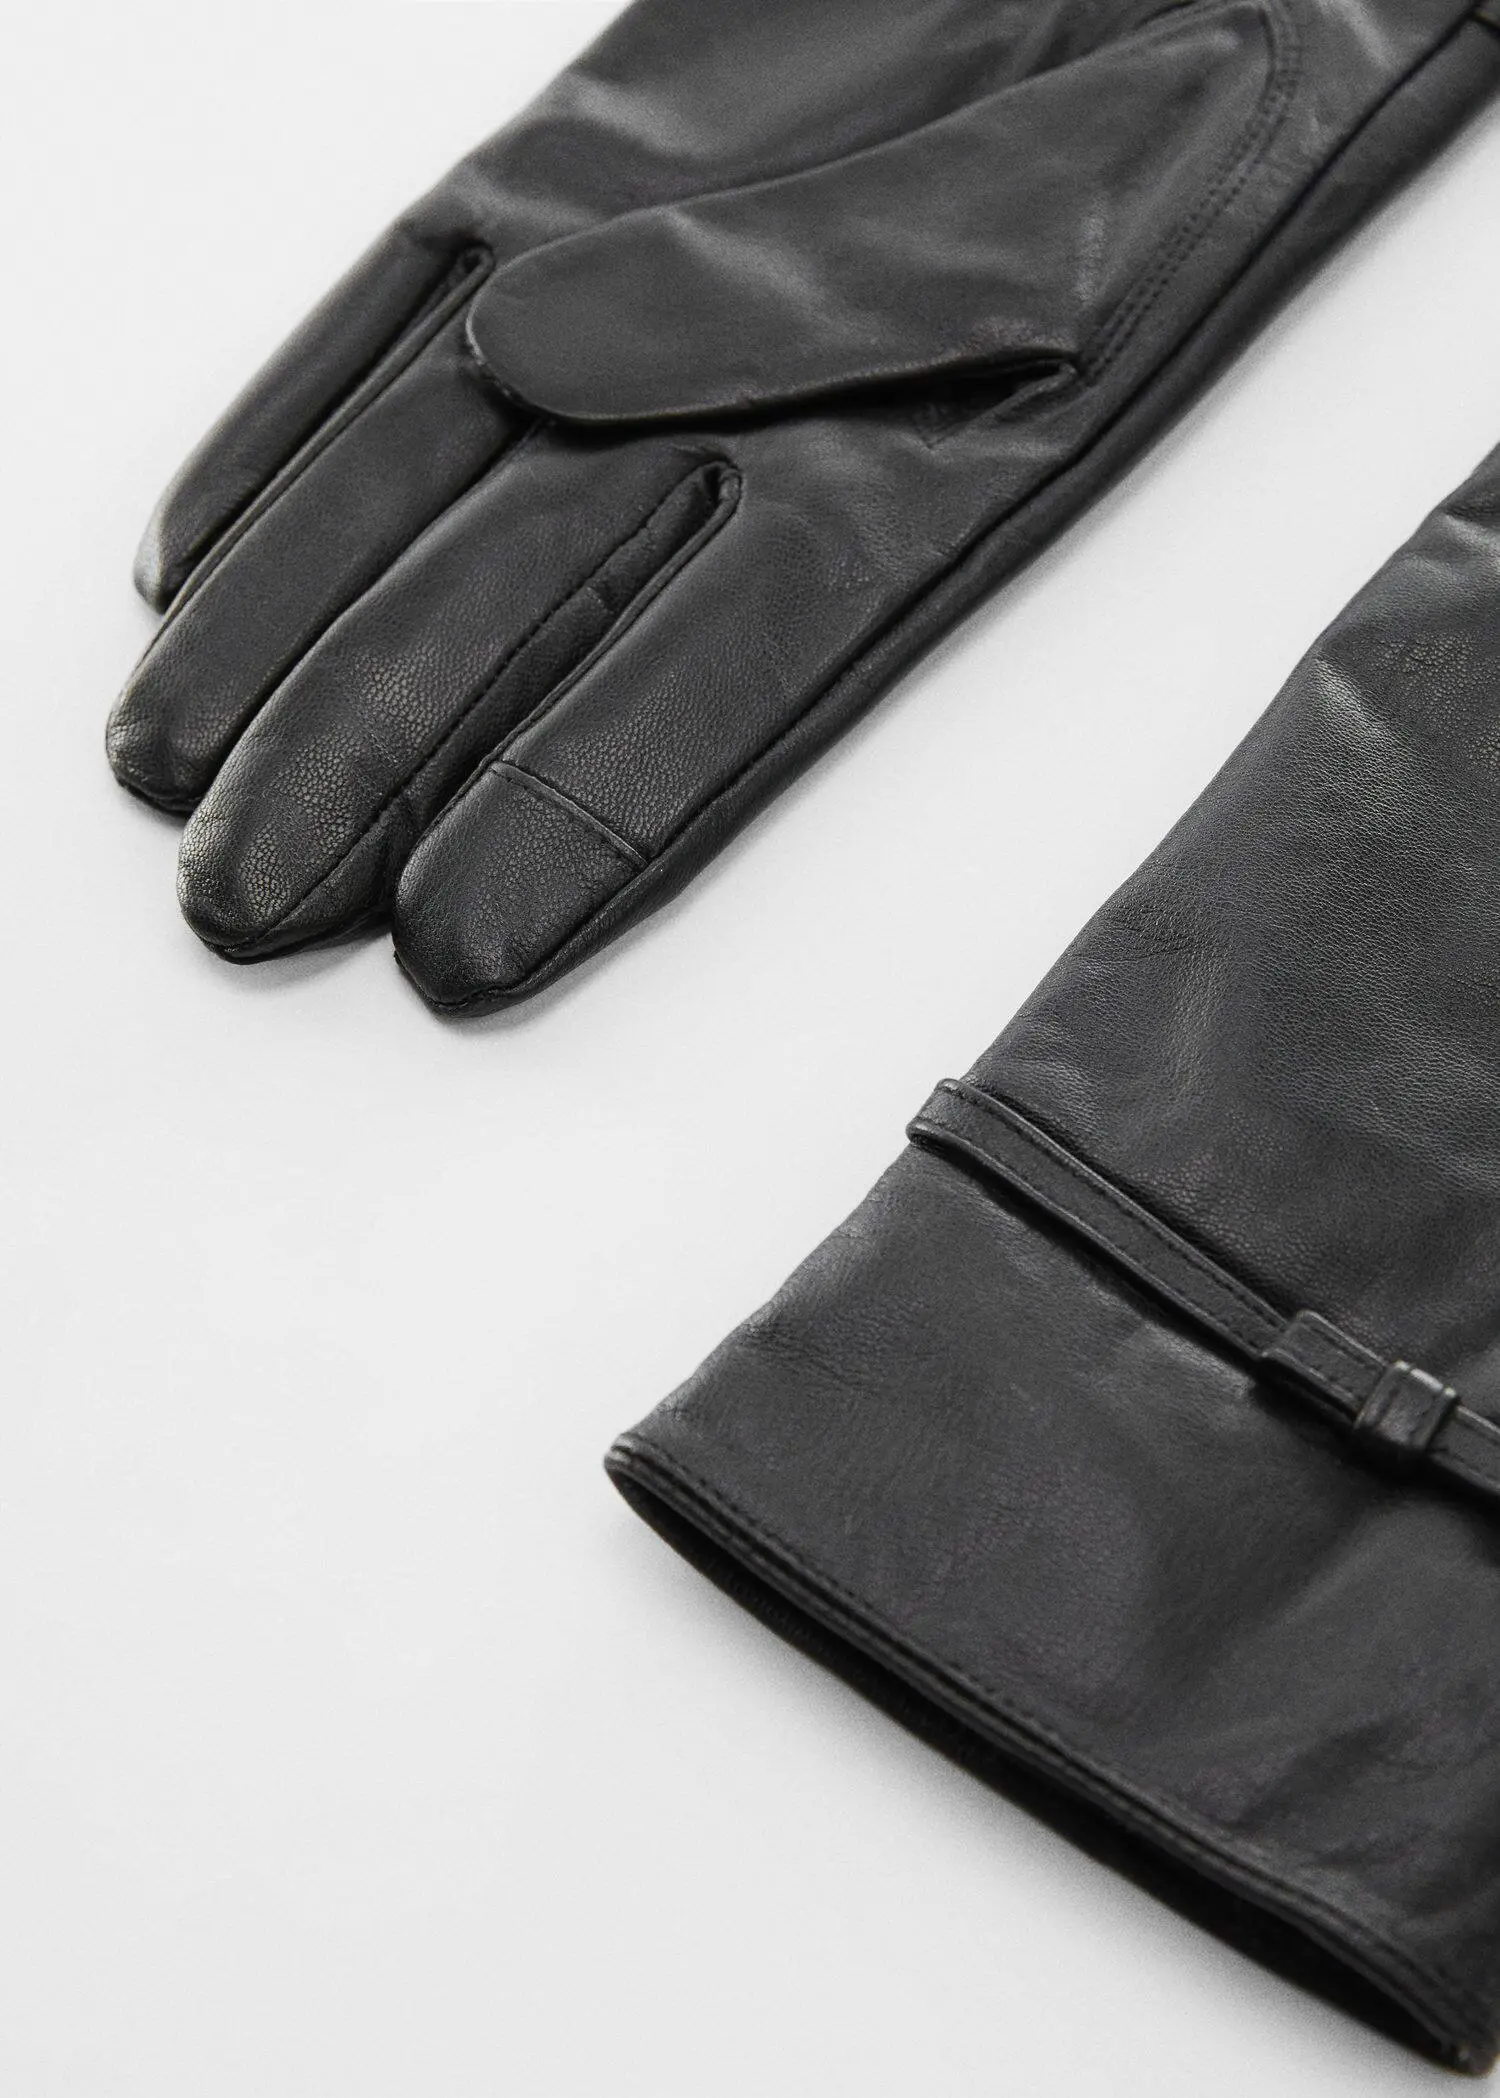 Mango Bow leather gloves. 2